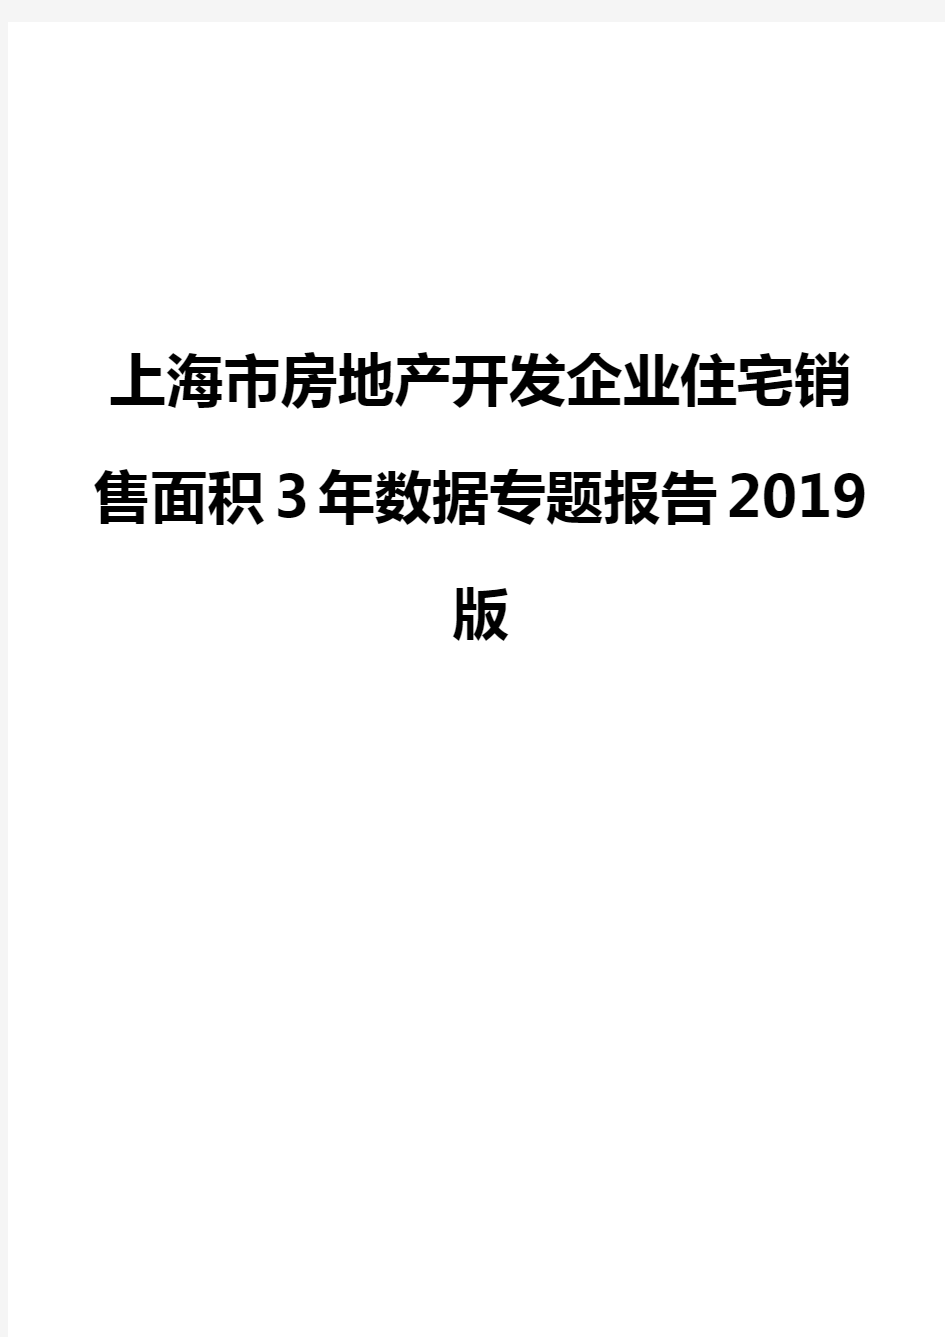 上海市房地产开发企业住宅销售面积3年数据专题报告2019版